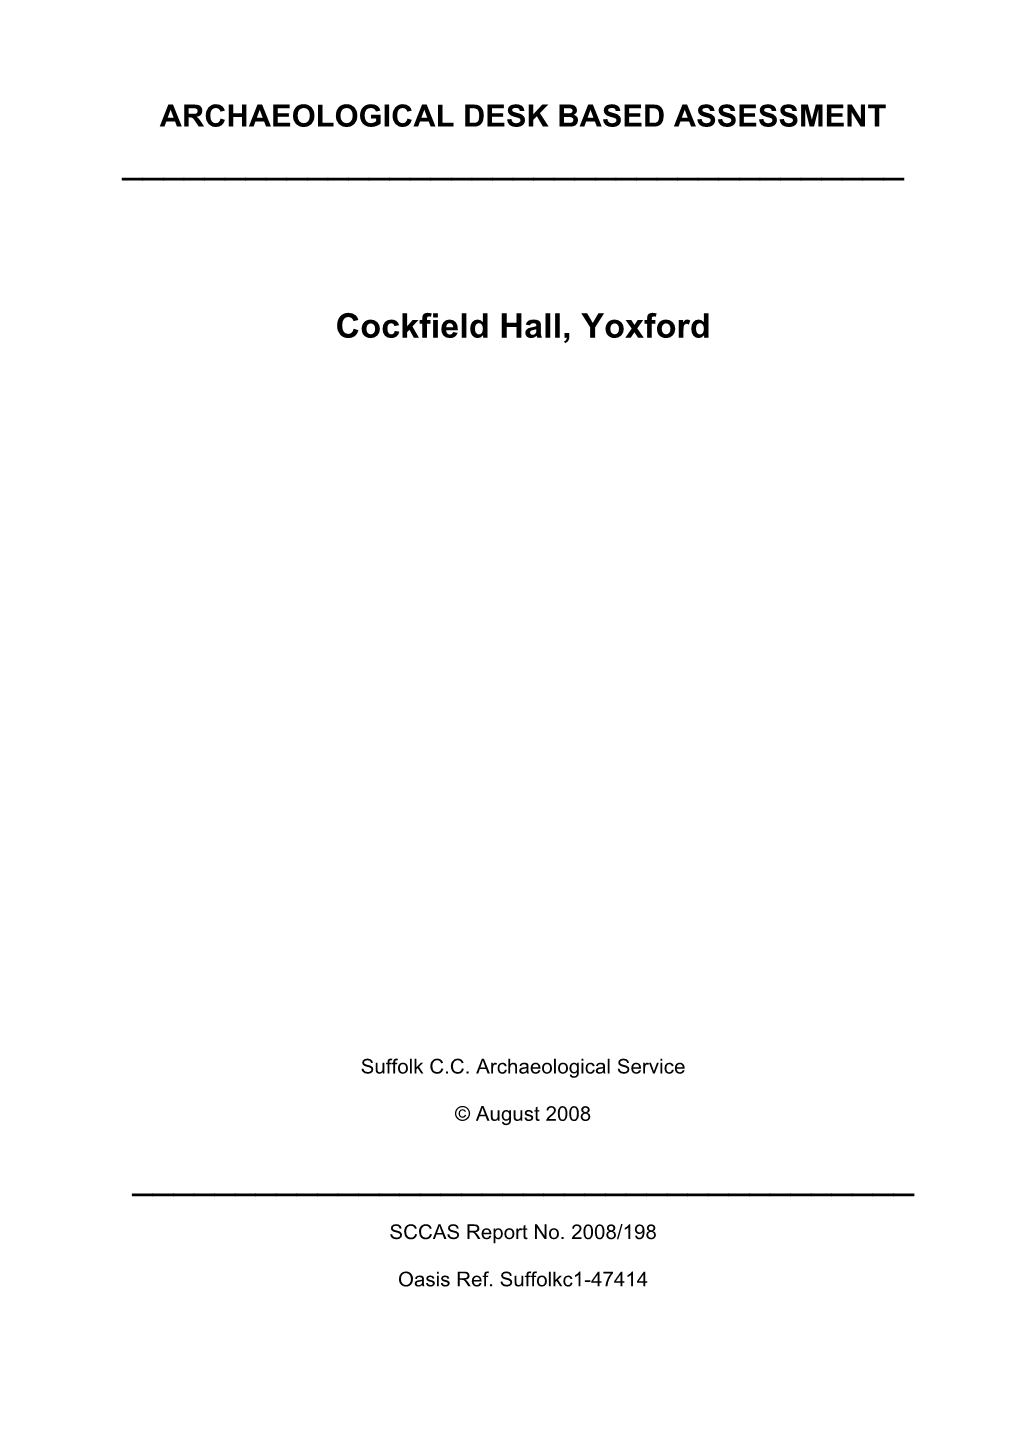 Cockfield Hall, Yoxford